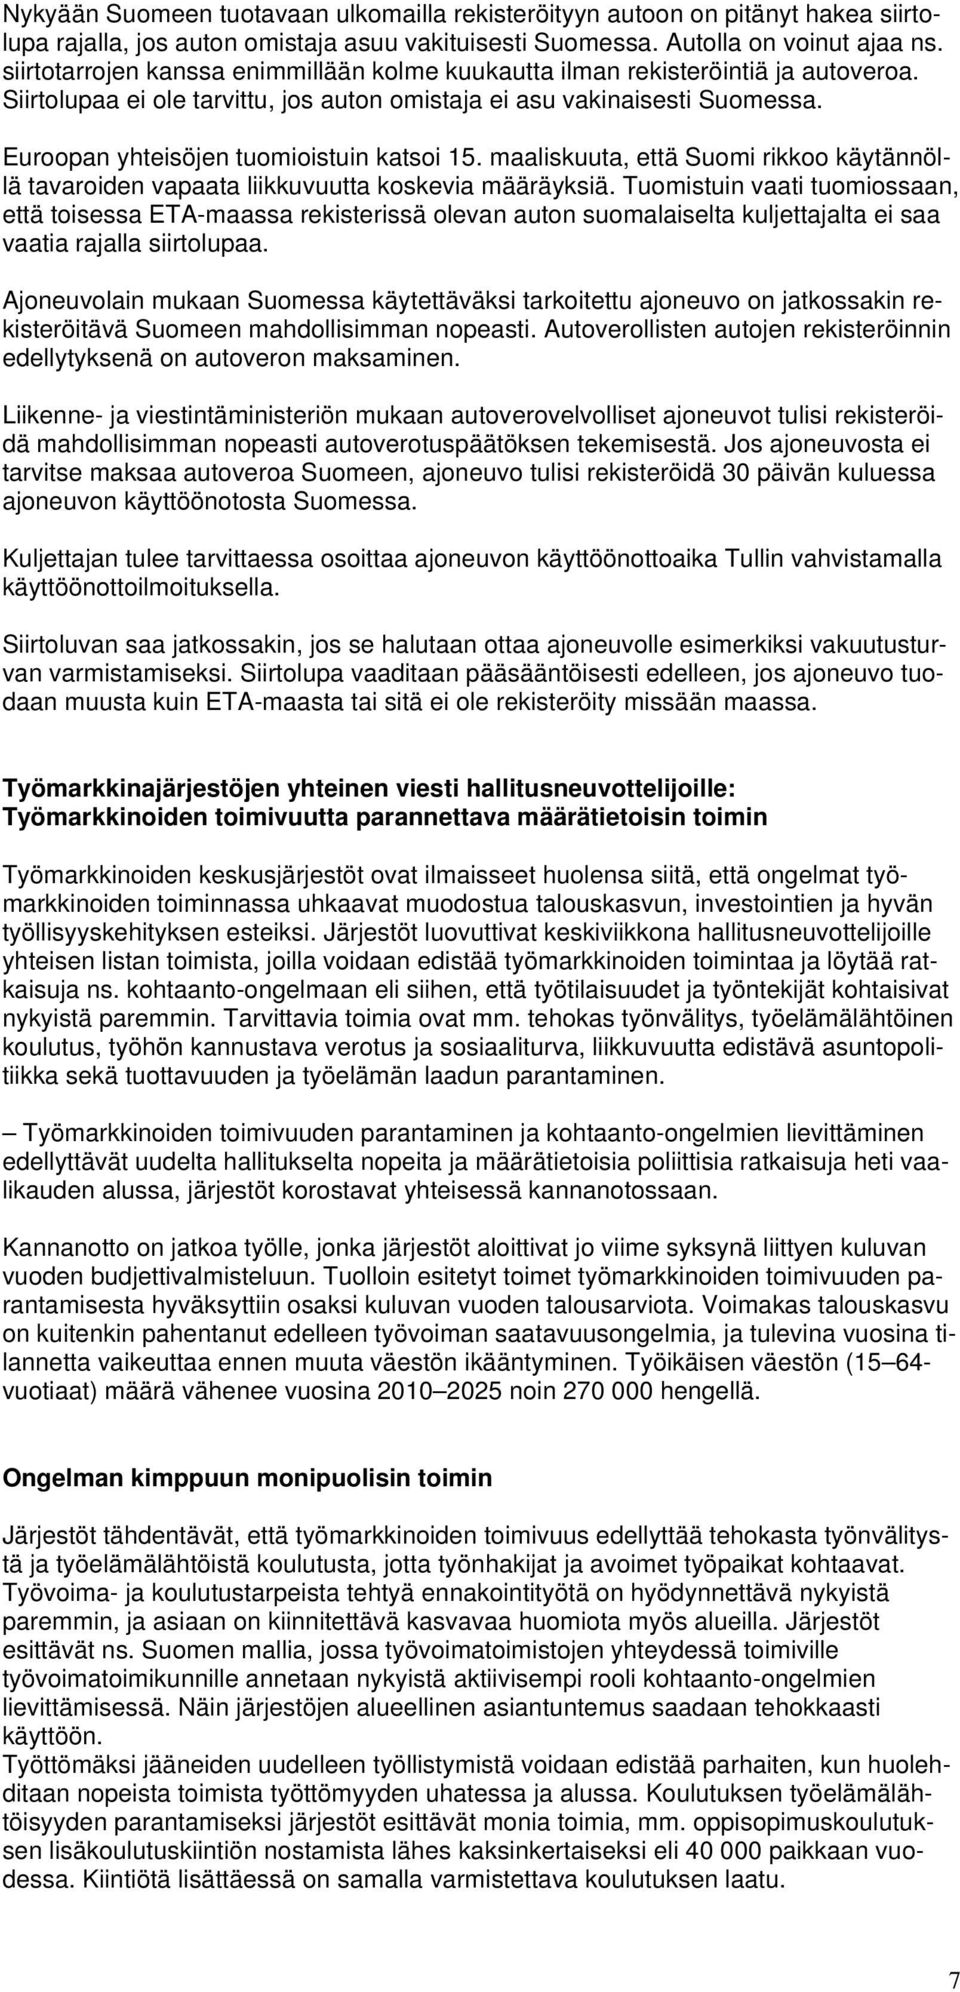 Euroopan yhteisöjen tuomioistuin katsoi 15. maaliskuuta, että Suomi rikkoo käytännöllä tavaroiden vapaata liikkuvuutta koskevia määräyksiä.